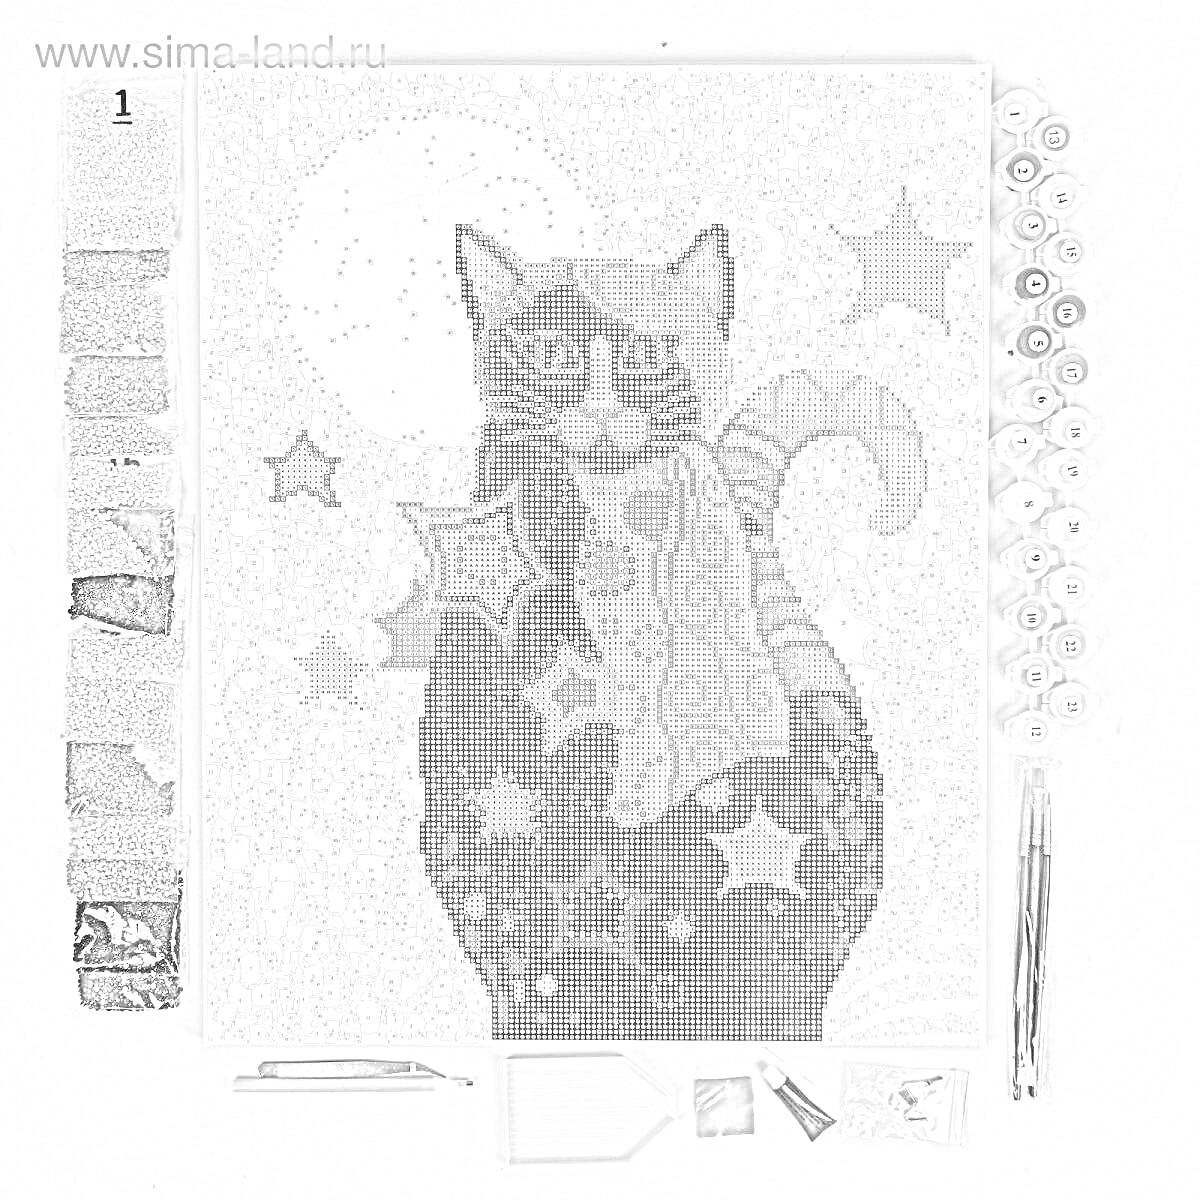 картинка с котом, украшенная разноцветными алмазами; на фоне - разноцветные звёзды, рядом комплектующие для раскраски: разноцветные камешки, карандаш для выкладки, лоток, пинцет и клей.